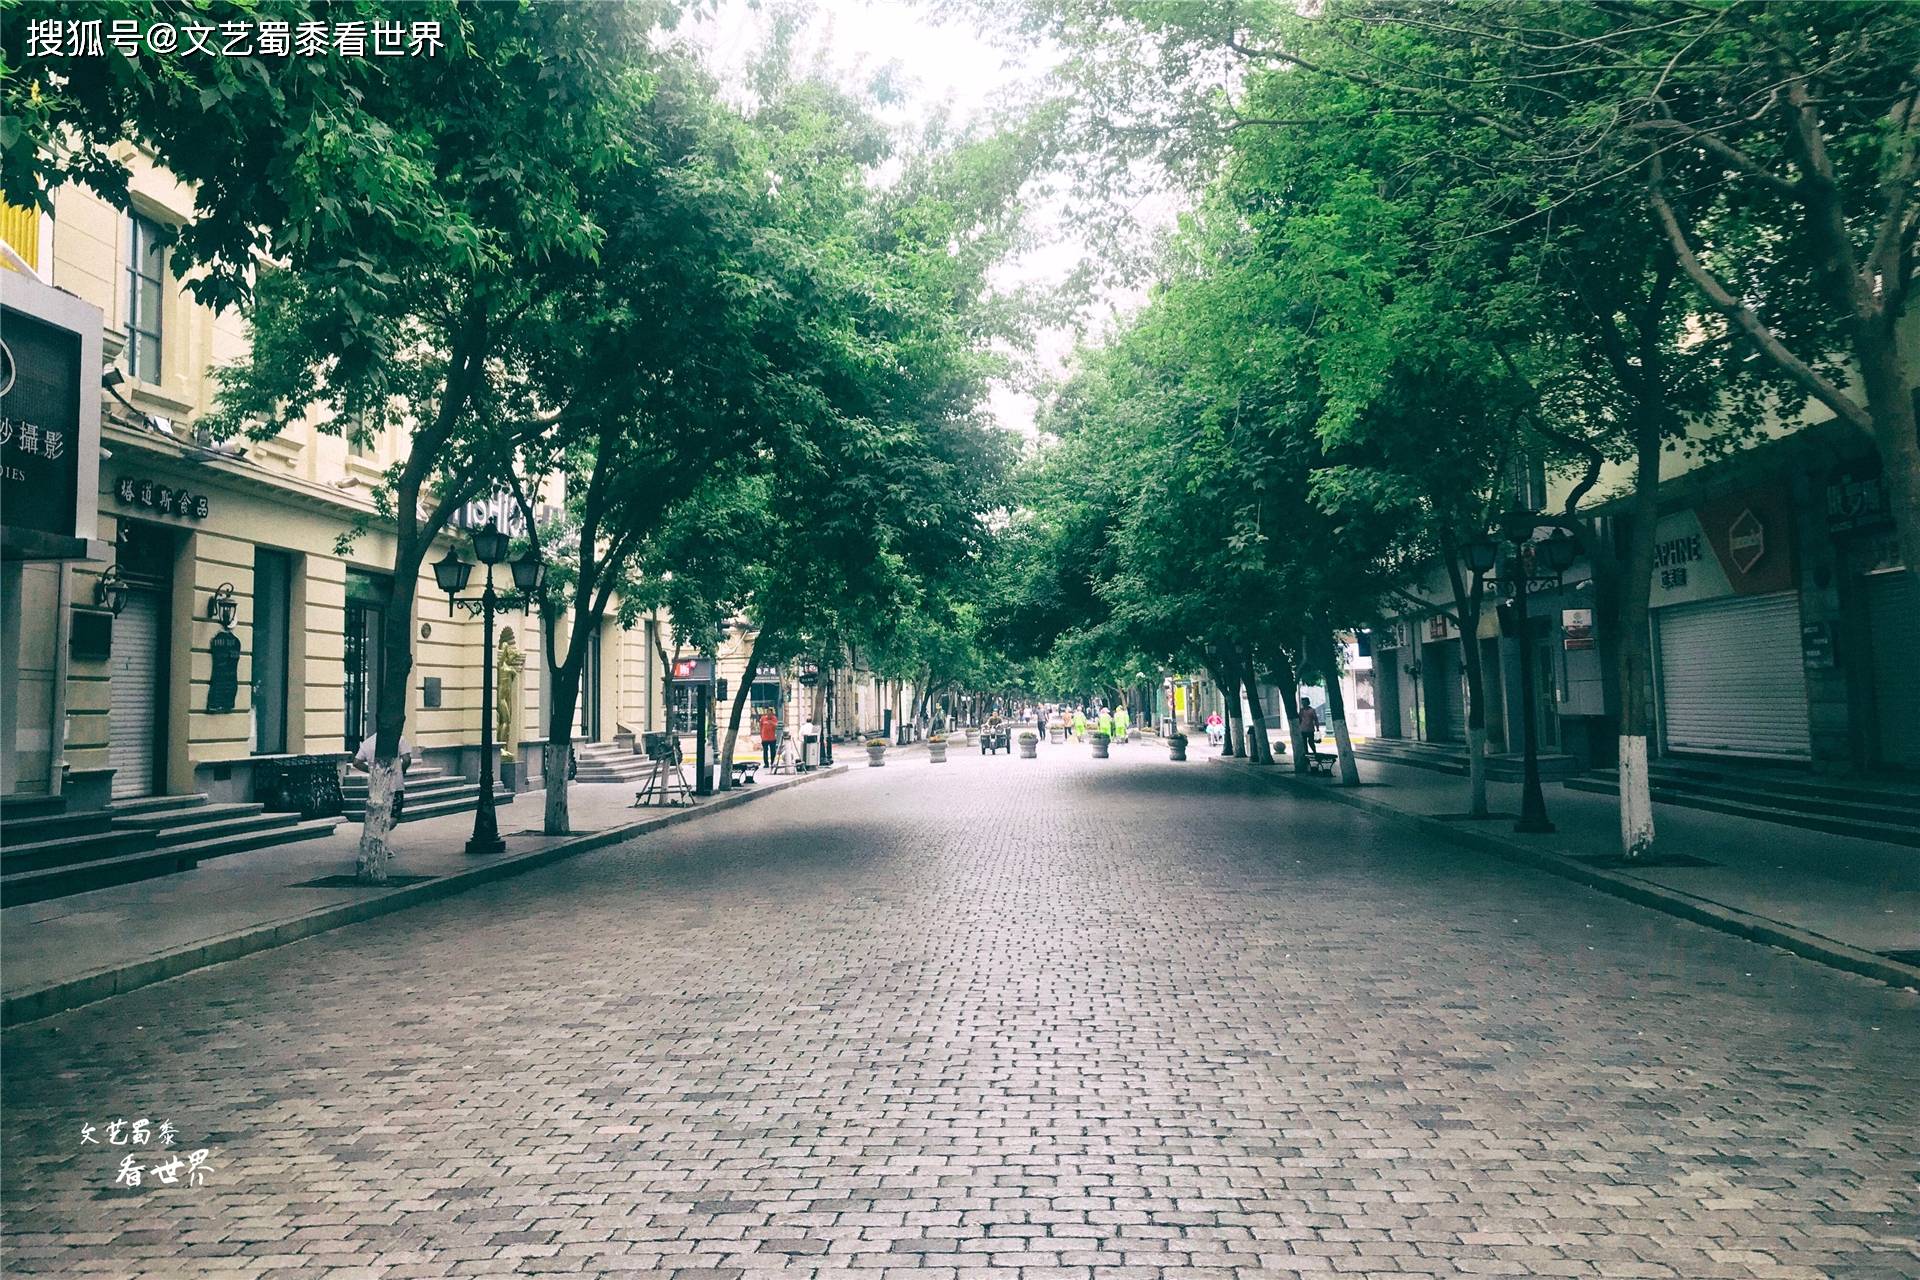 哈尔滨中央大街，被誉为“中国第一街”，这话没毛病